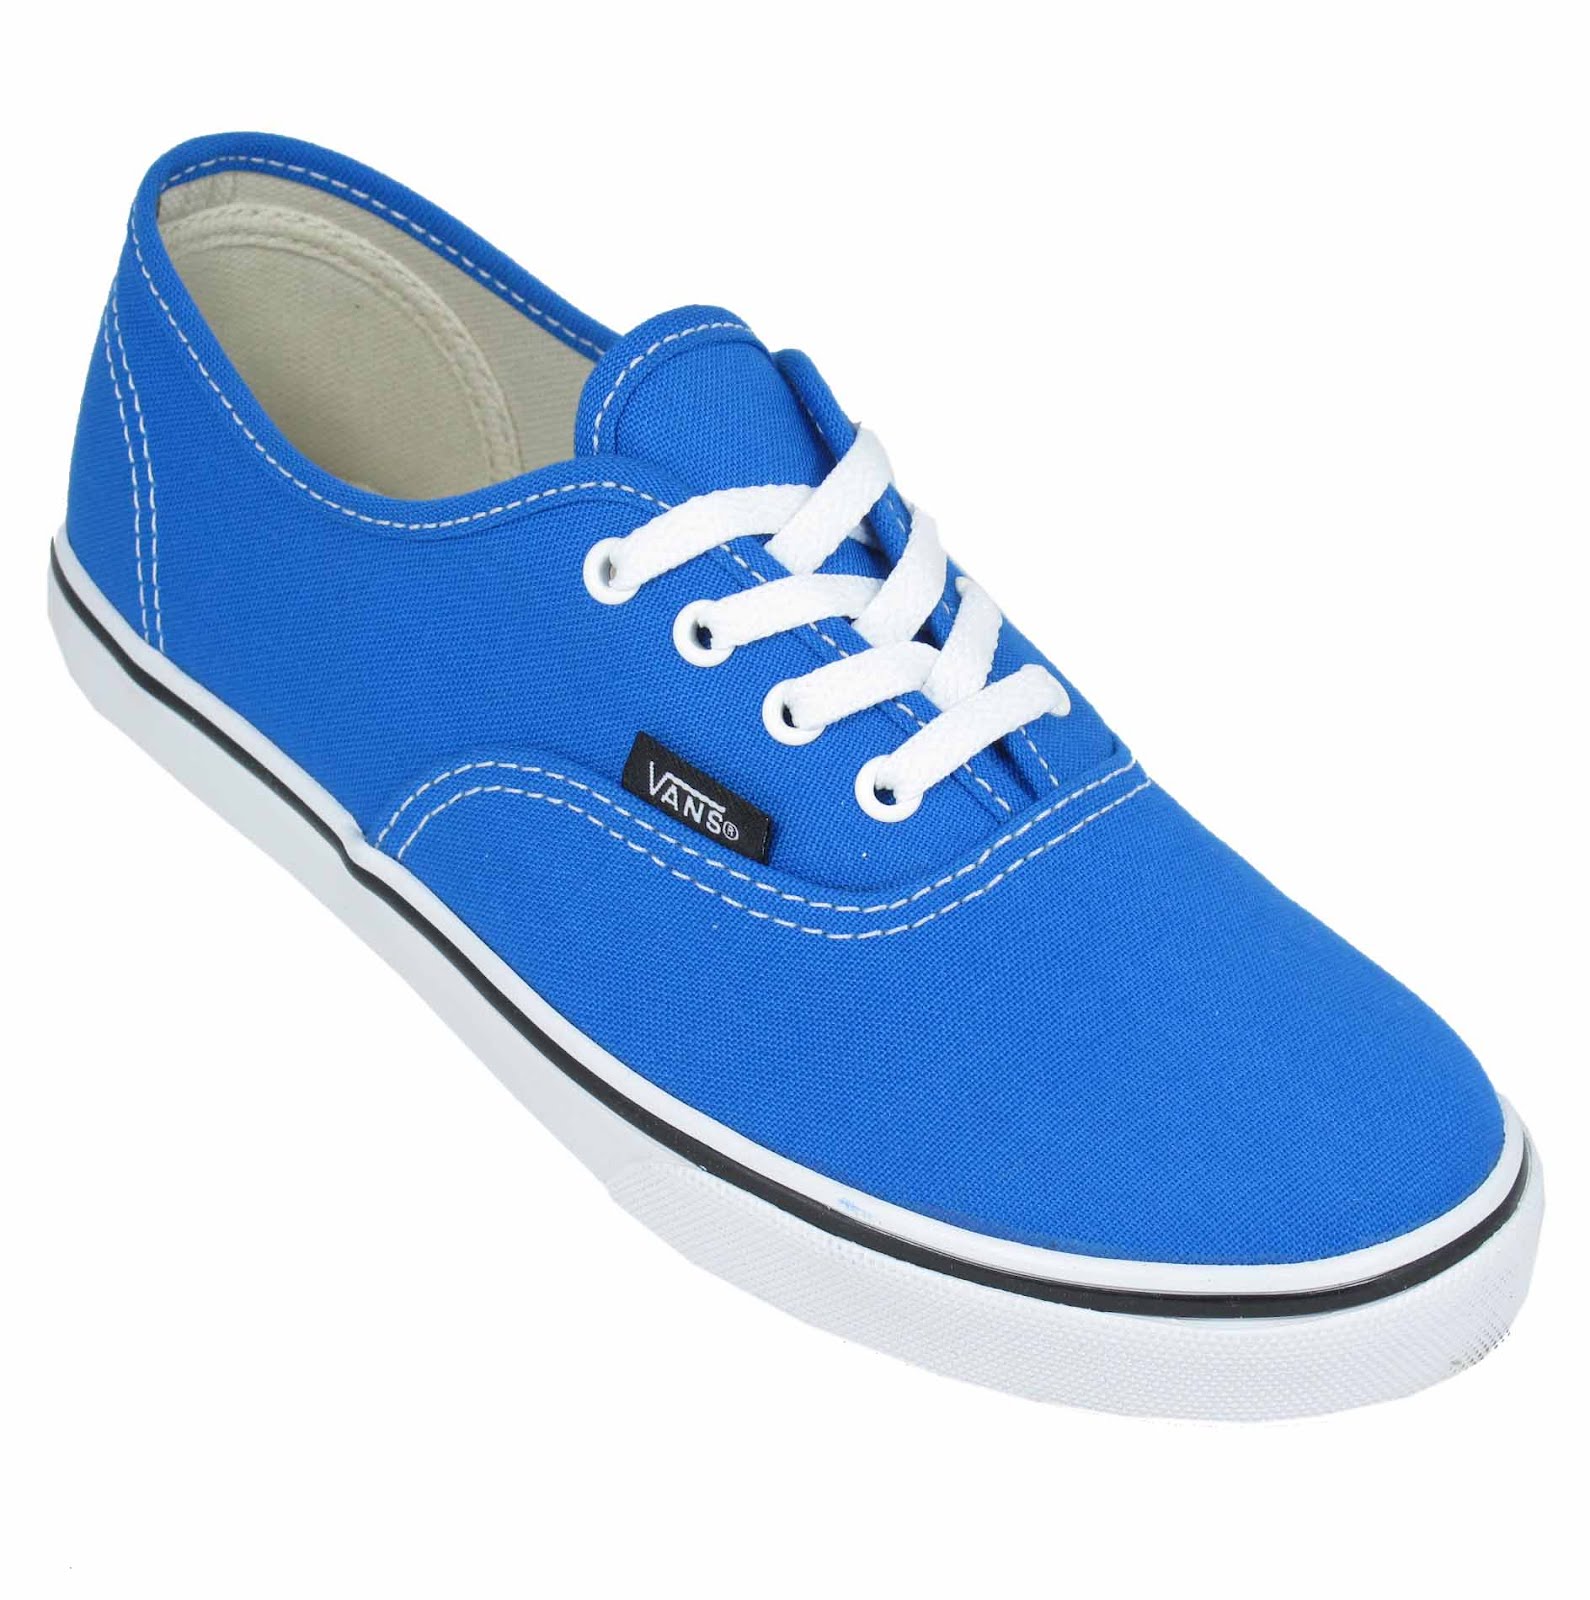 Landau Online Vans Kids Shoes New Colours!